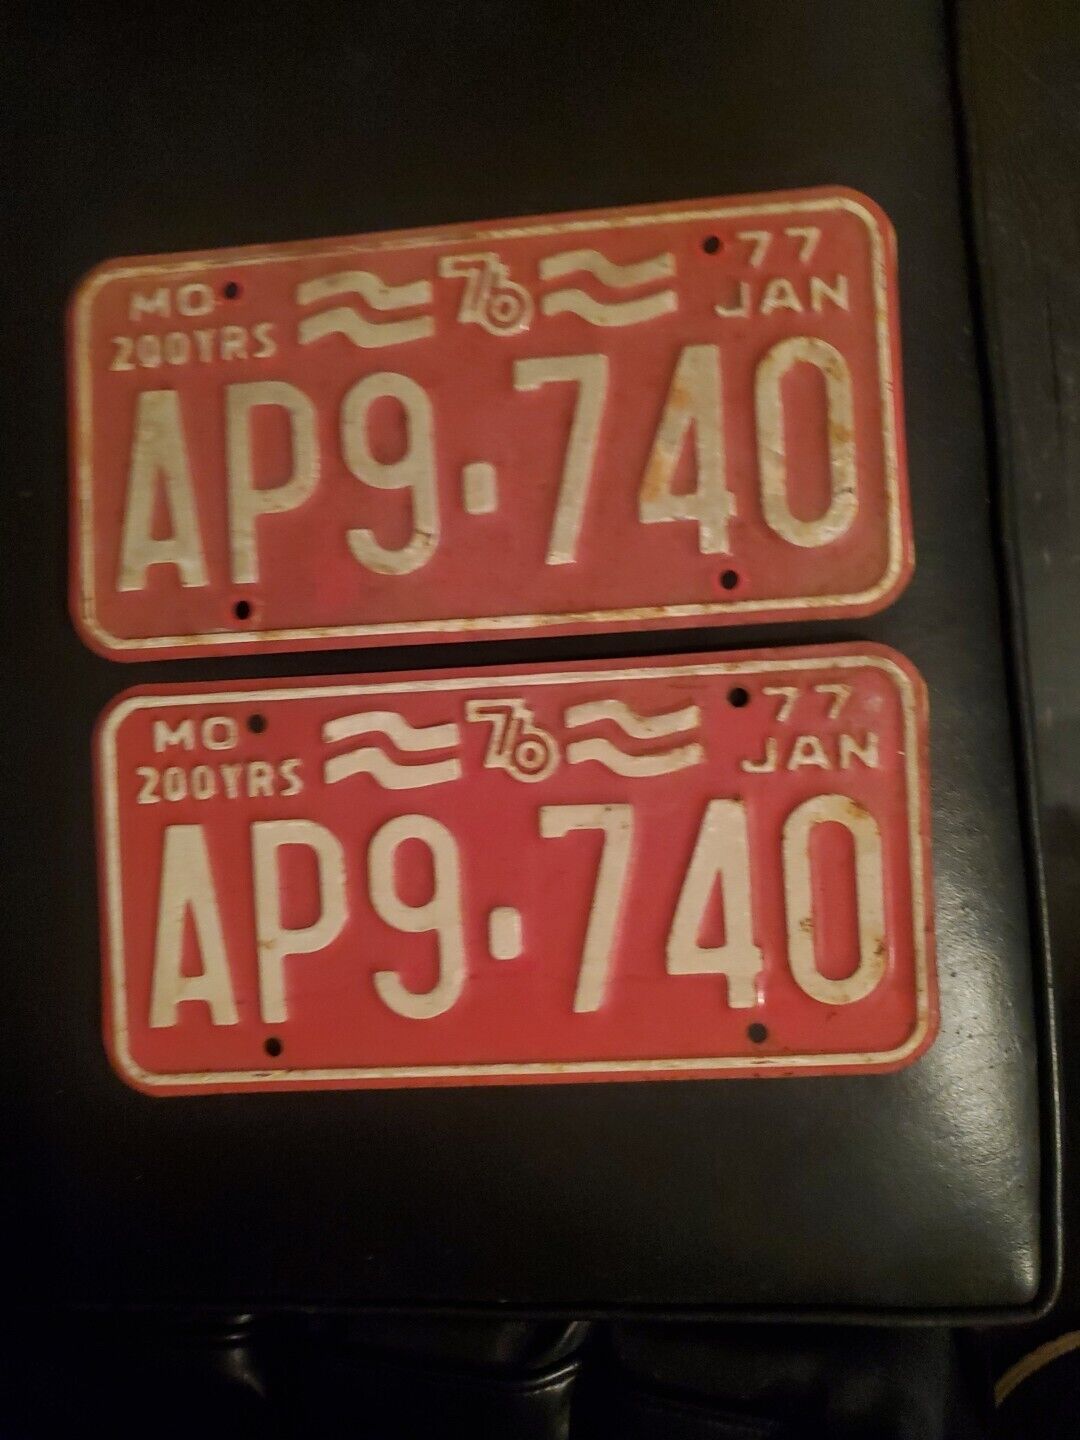 PAIR 1977 Missouri License Plates Set AP9 740 Bicentennial Jan 77 MO 200 YEARS